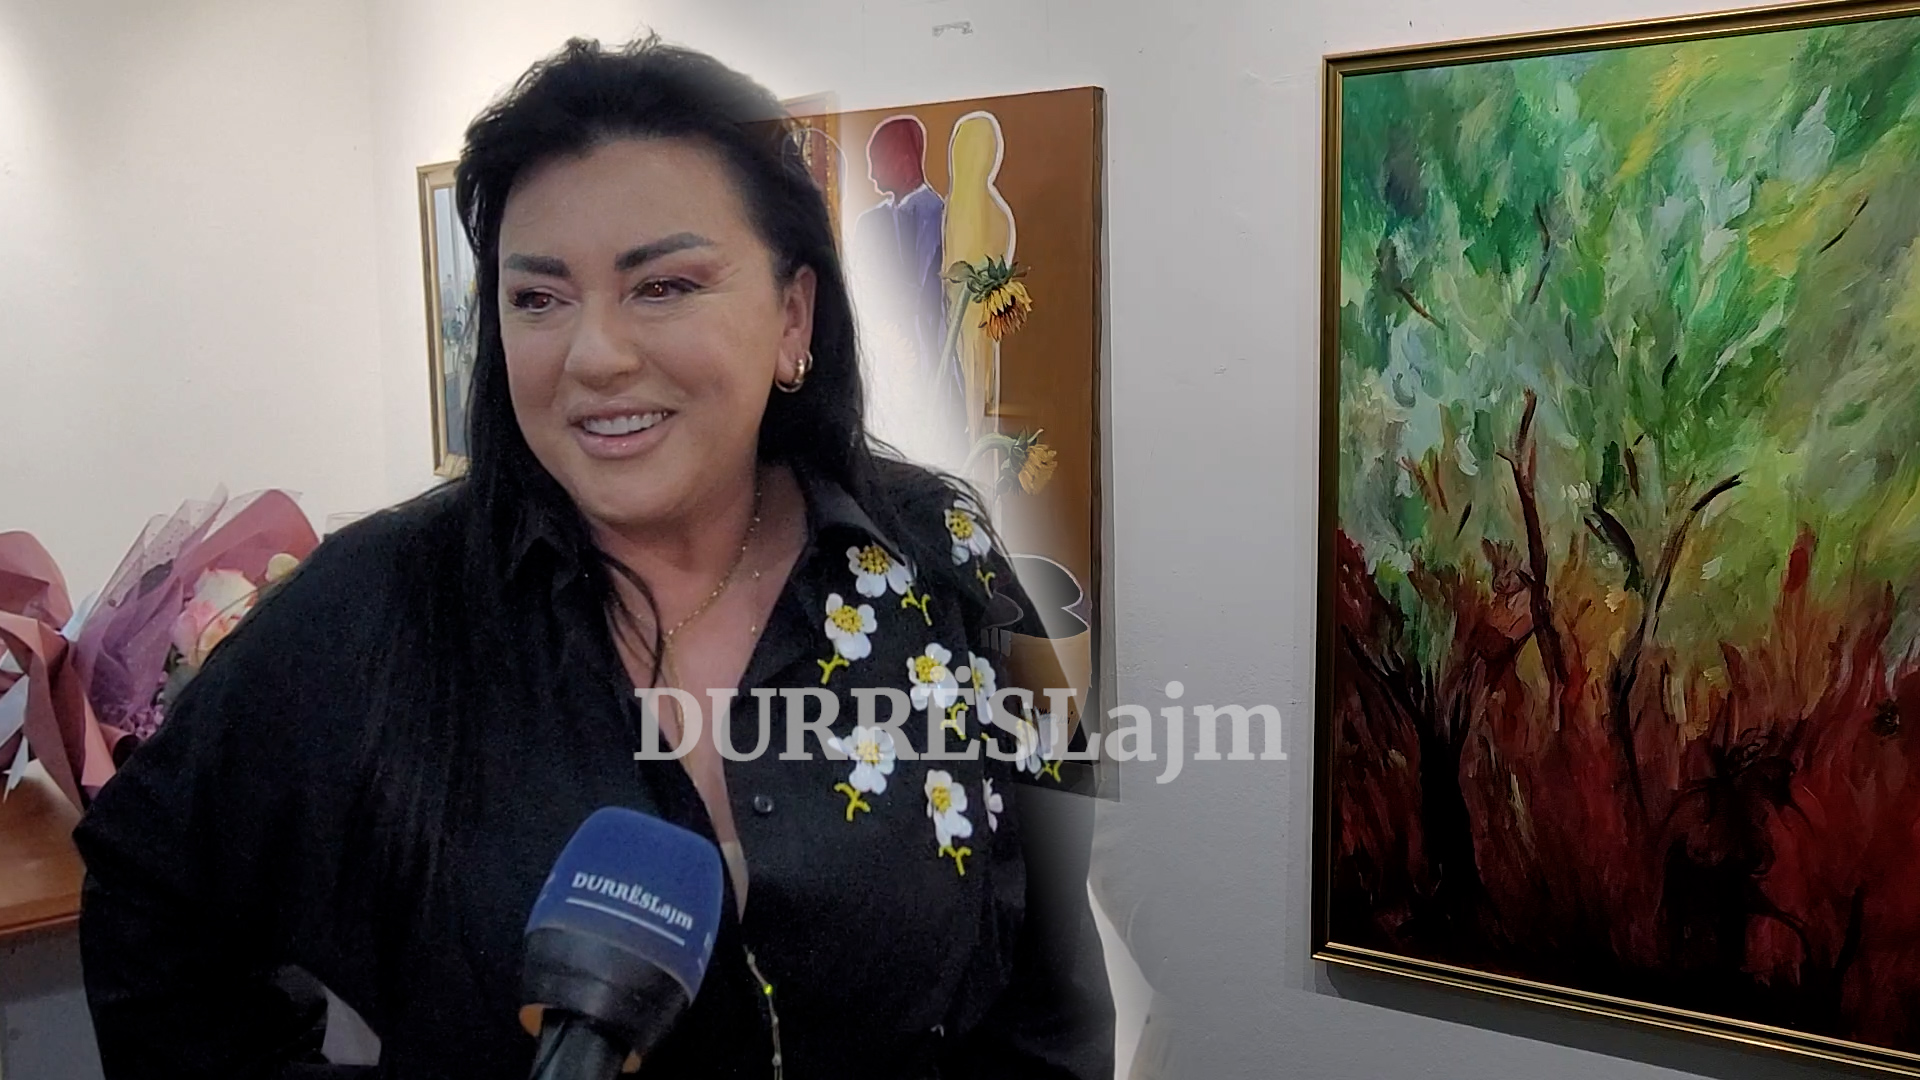 Durrës, hapet ekspozita personale e piktores Valbona Kapllani (VIDEO)